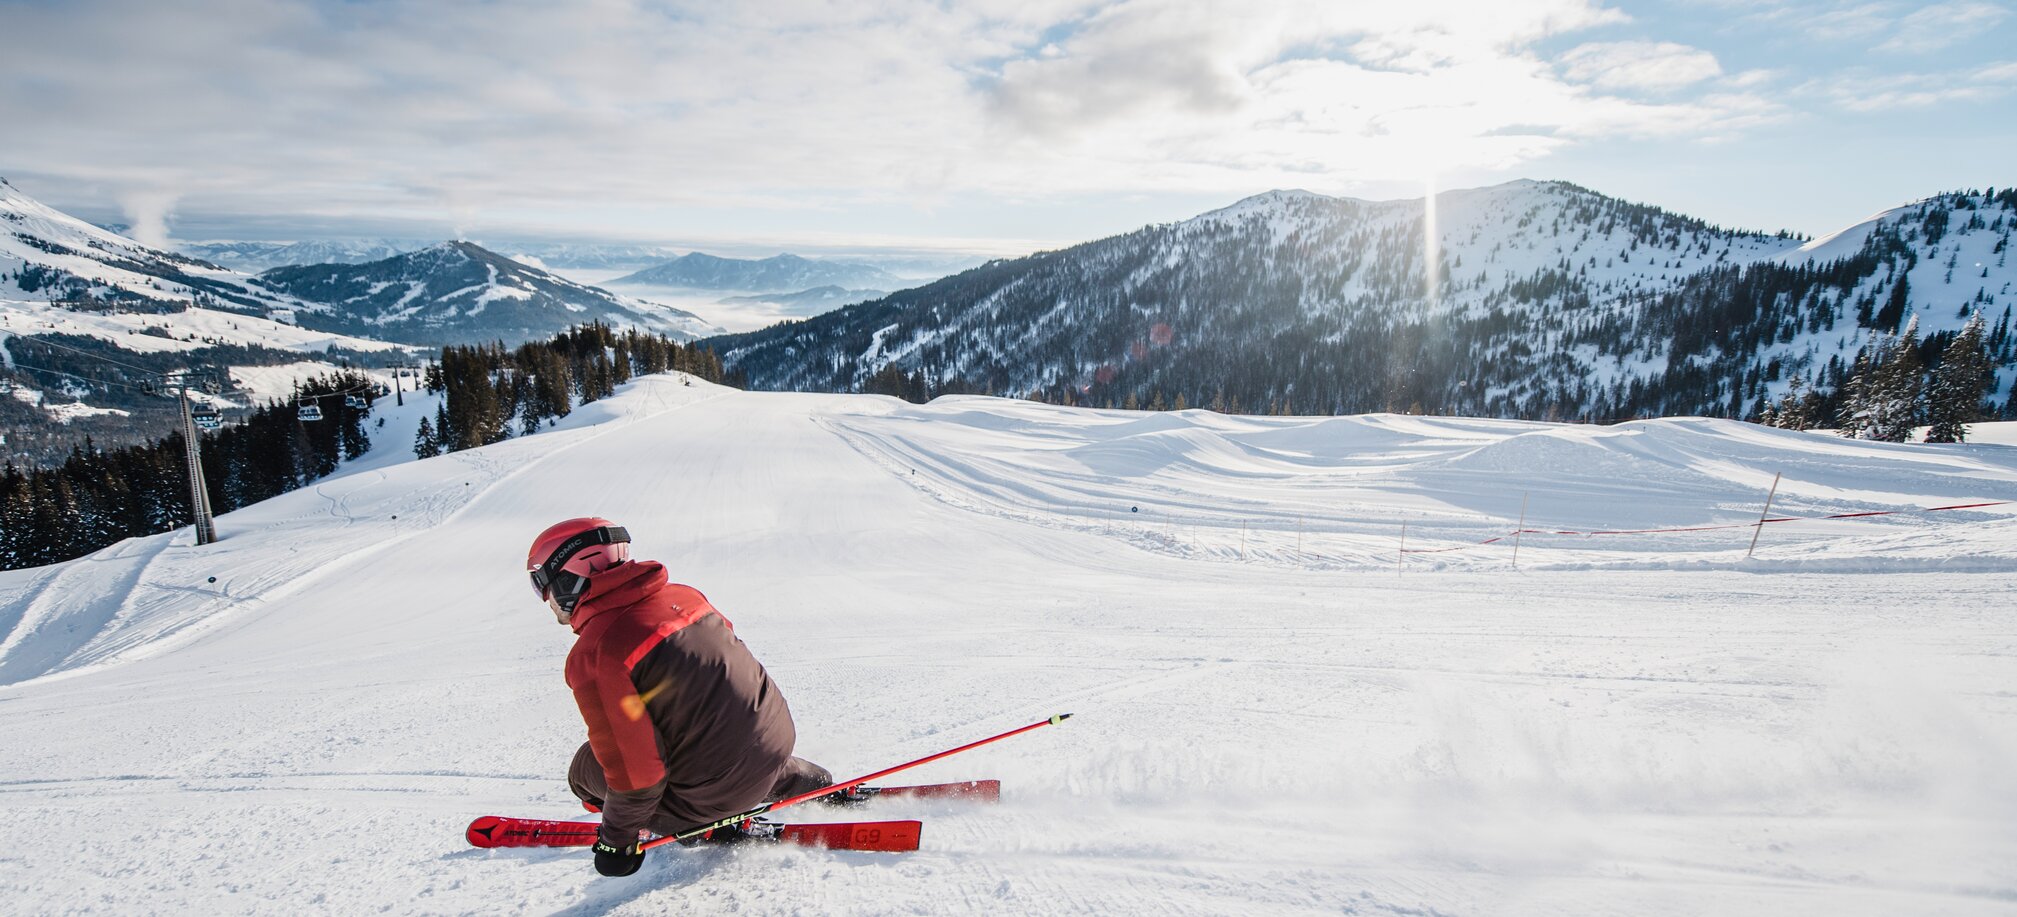 Spaß und gute Bedingungen auf den perfekt präparierten Skipisten in Ski amadé